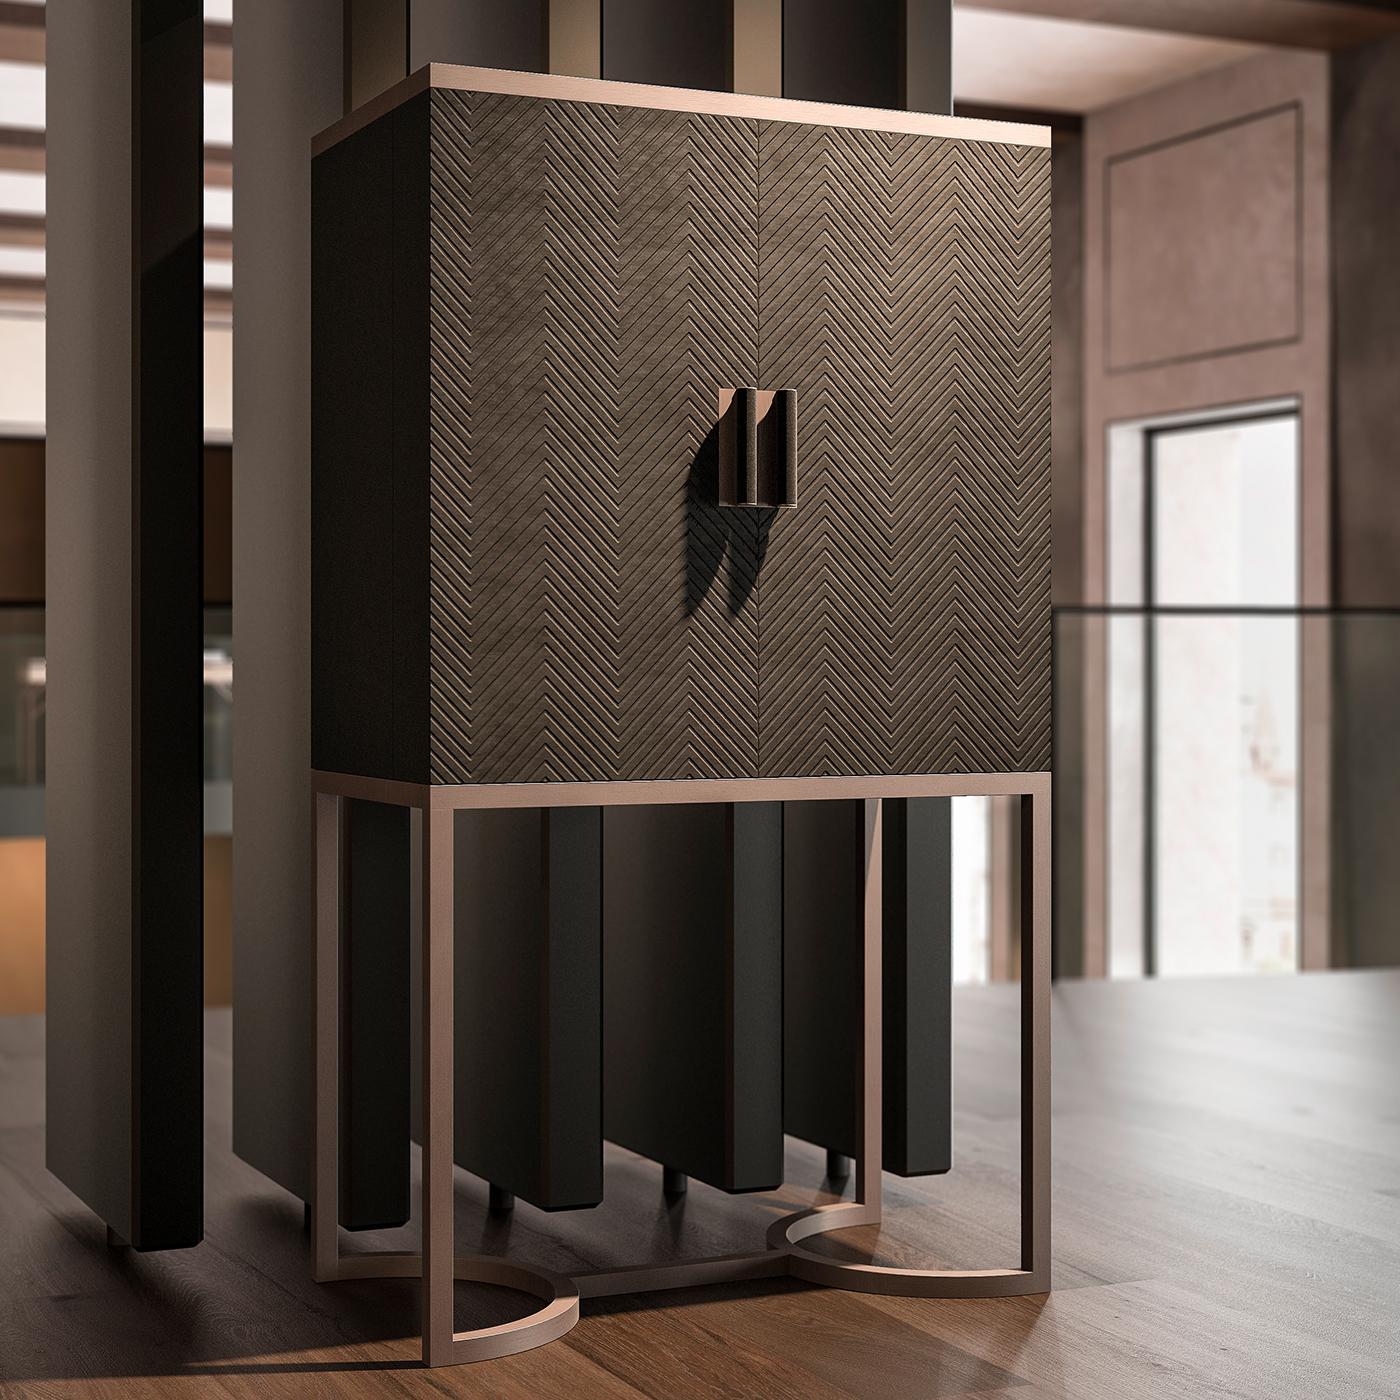 Le meuble de bar Dragonfly est élégant et stylé dans son design et présente des portes uniques laquées en velours avec un design gravé. Parfaite pour ranger vos boissons préférées et votre verrerie exclusive, l'armoire repose sur une base métallique